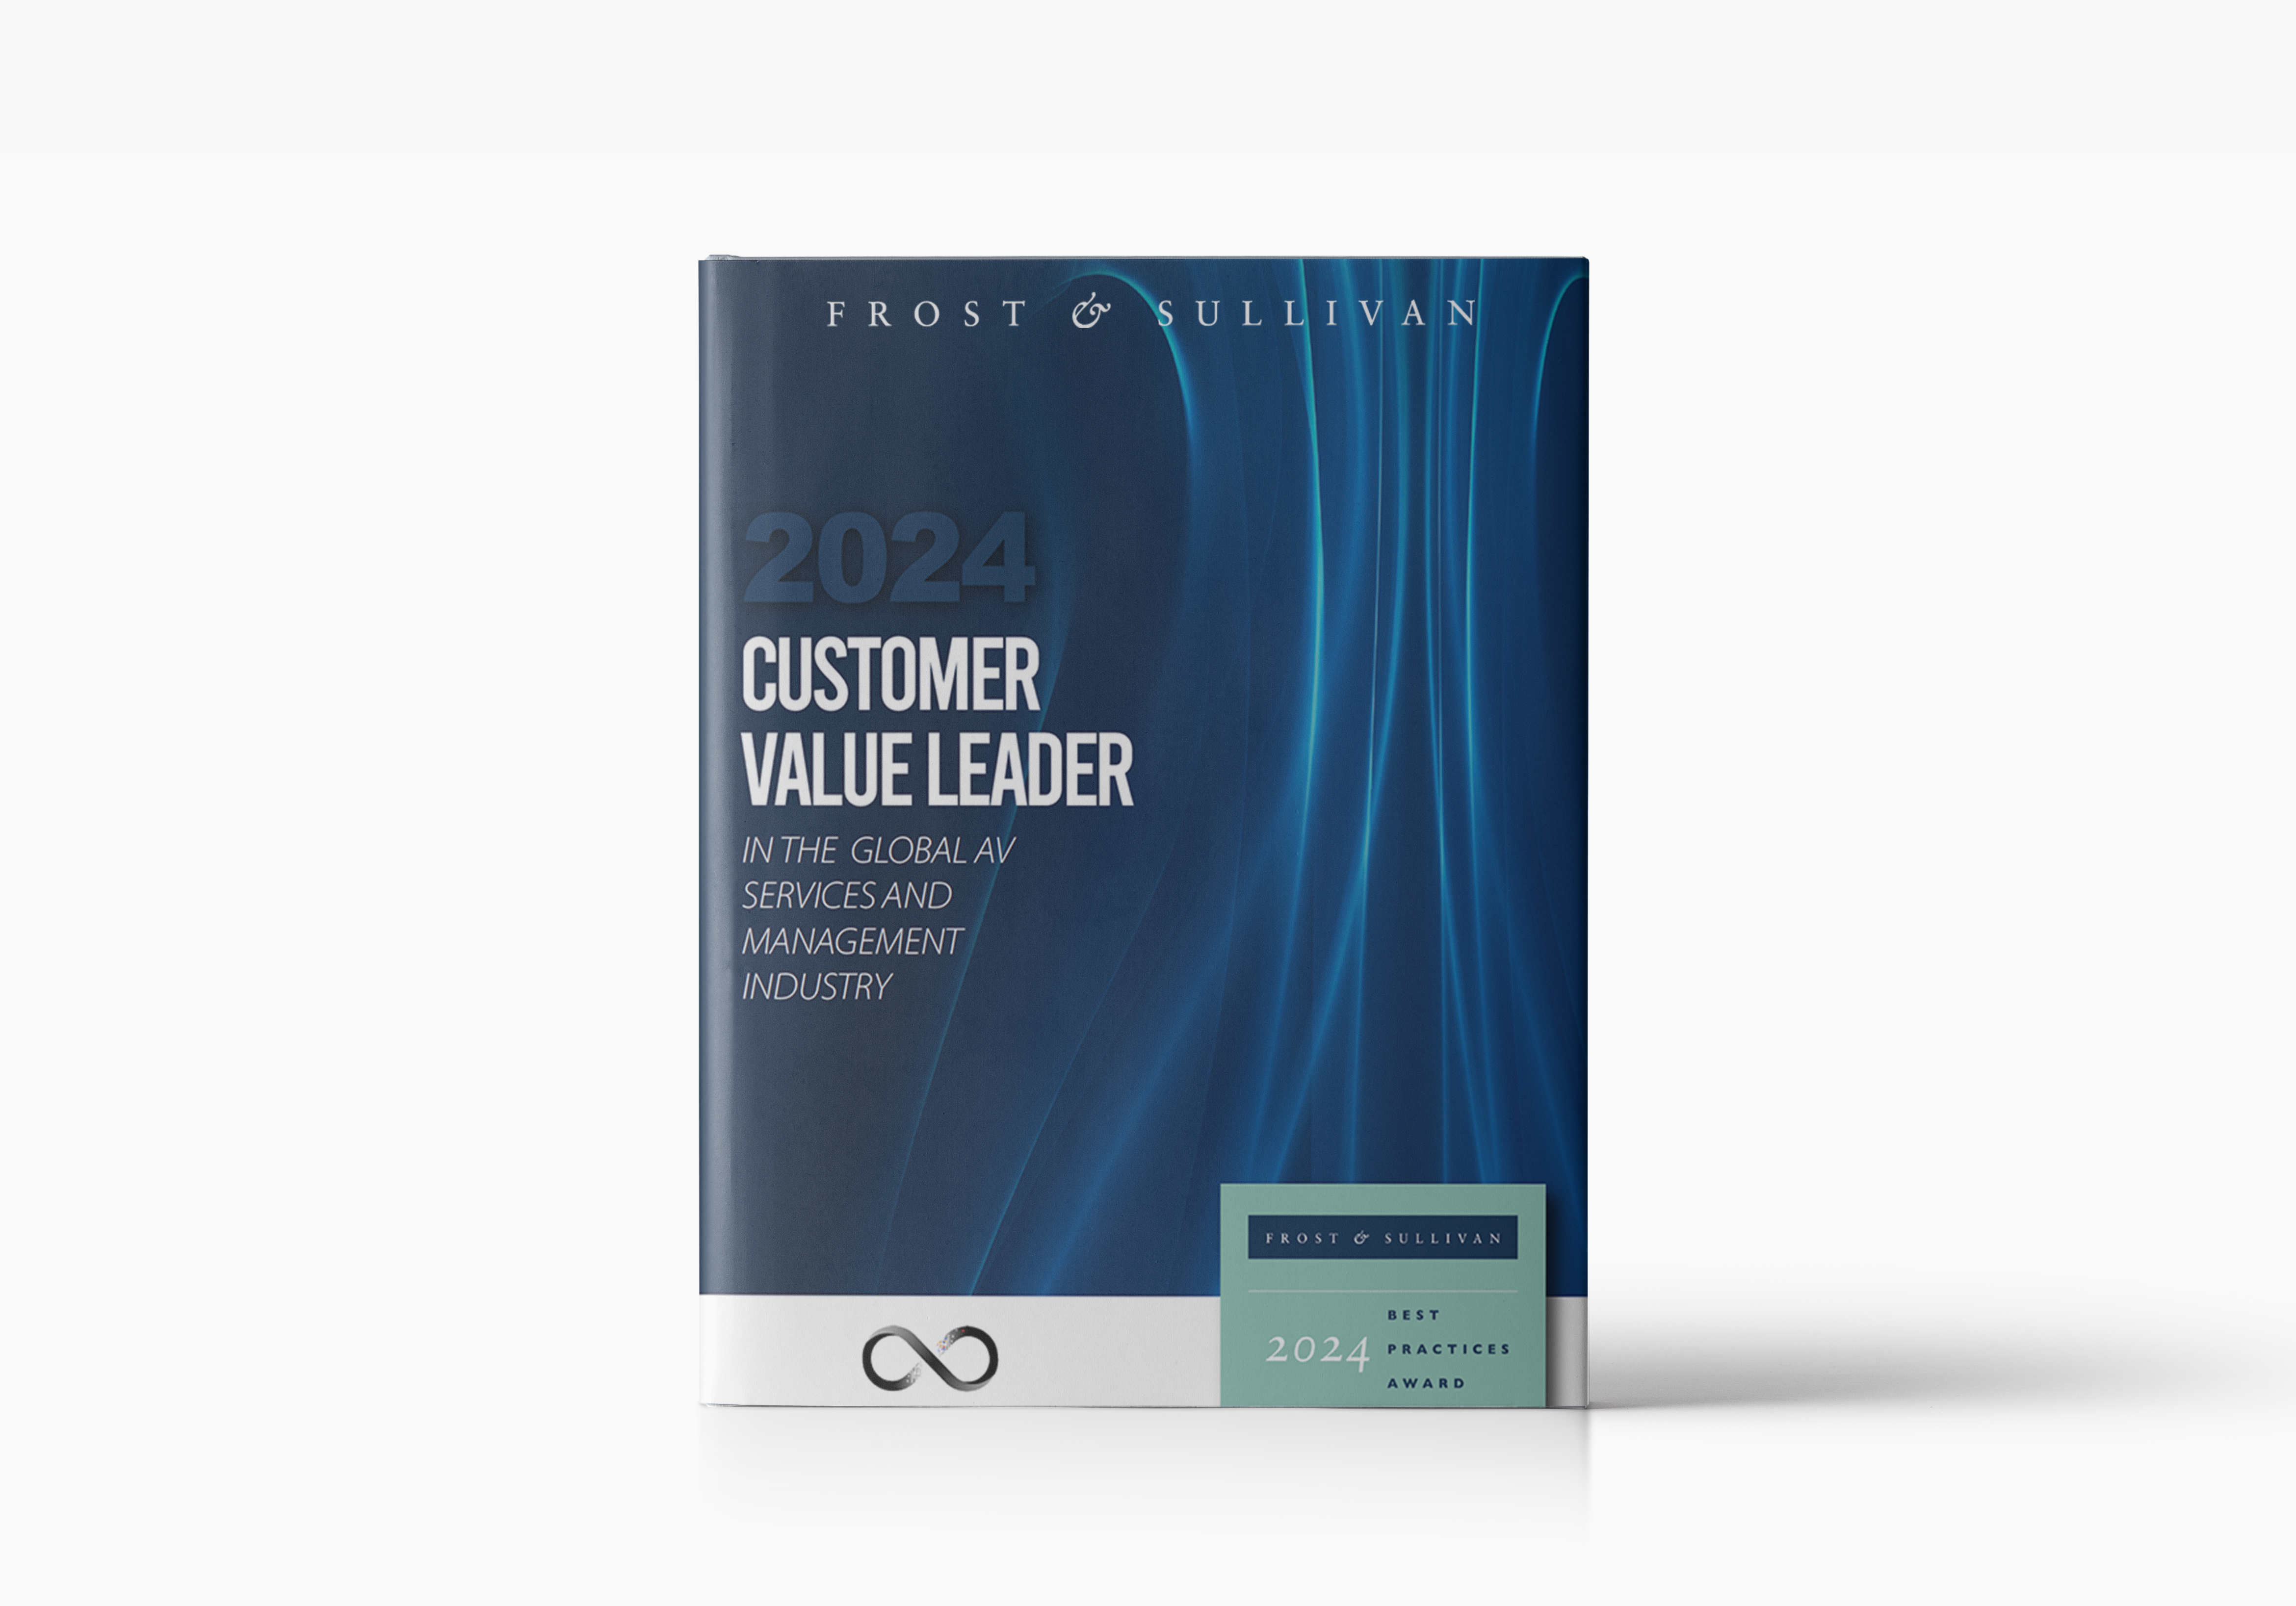 2024 Customer Value Leader, Rapporto sui servizi e sulla gestione del settore AV a livello globale